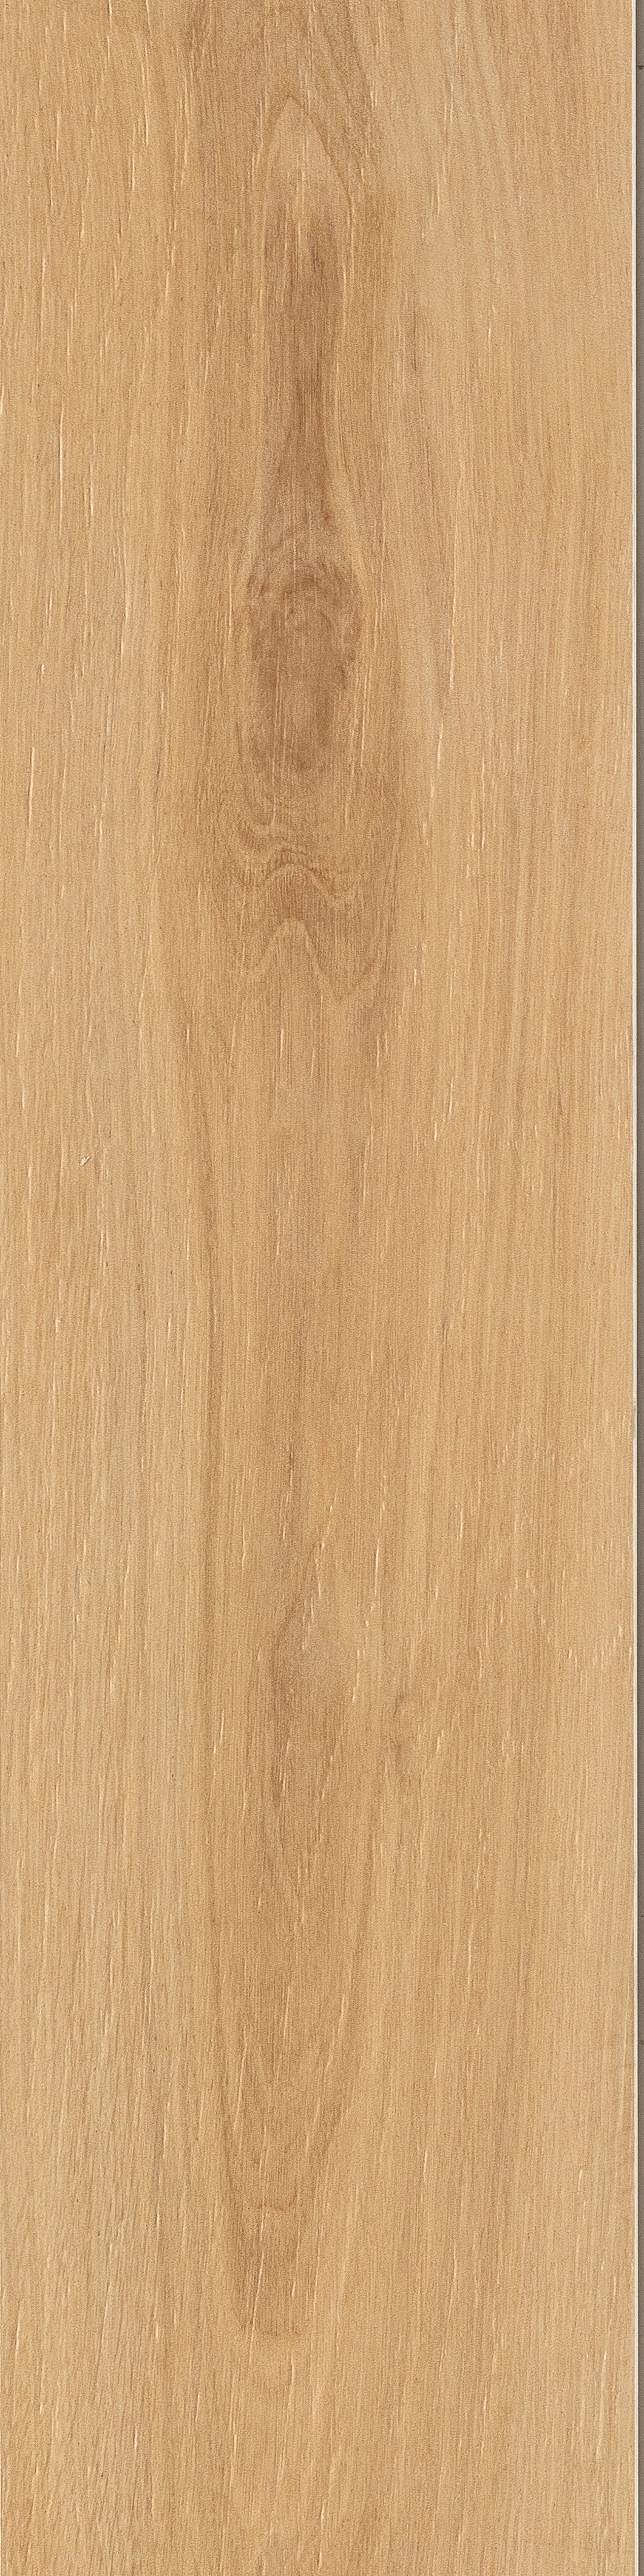 Terrassenplatte Holzoptik junge Eiche 30x120 cm "Rovere Naturale" Feinsteinzeug 1,9 cm rektifiziert 